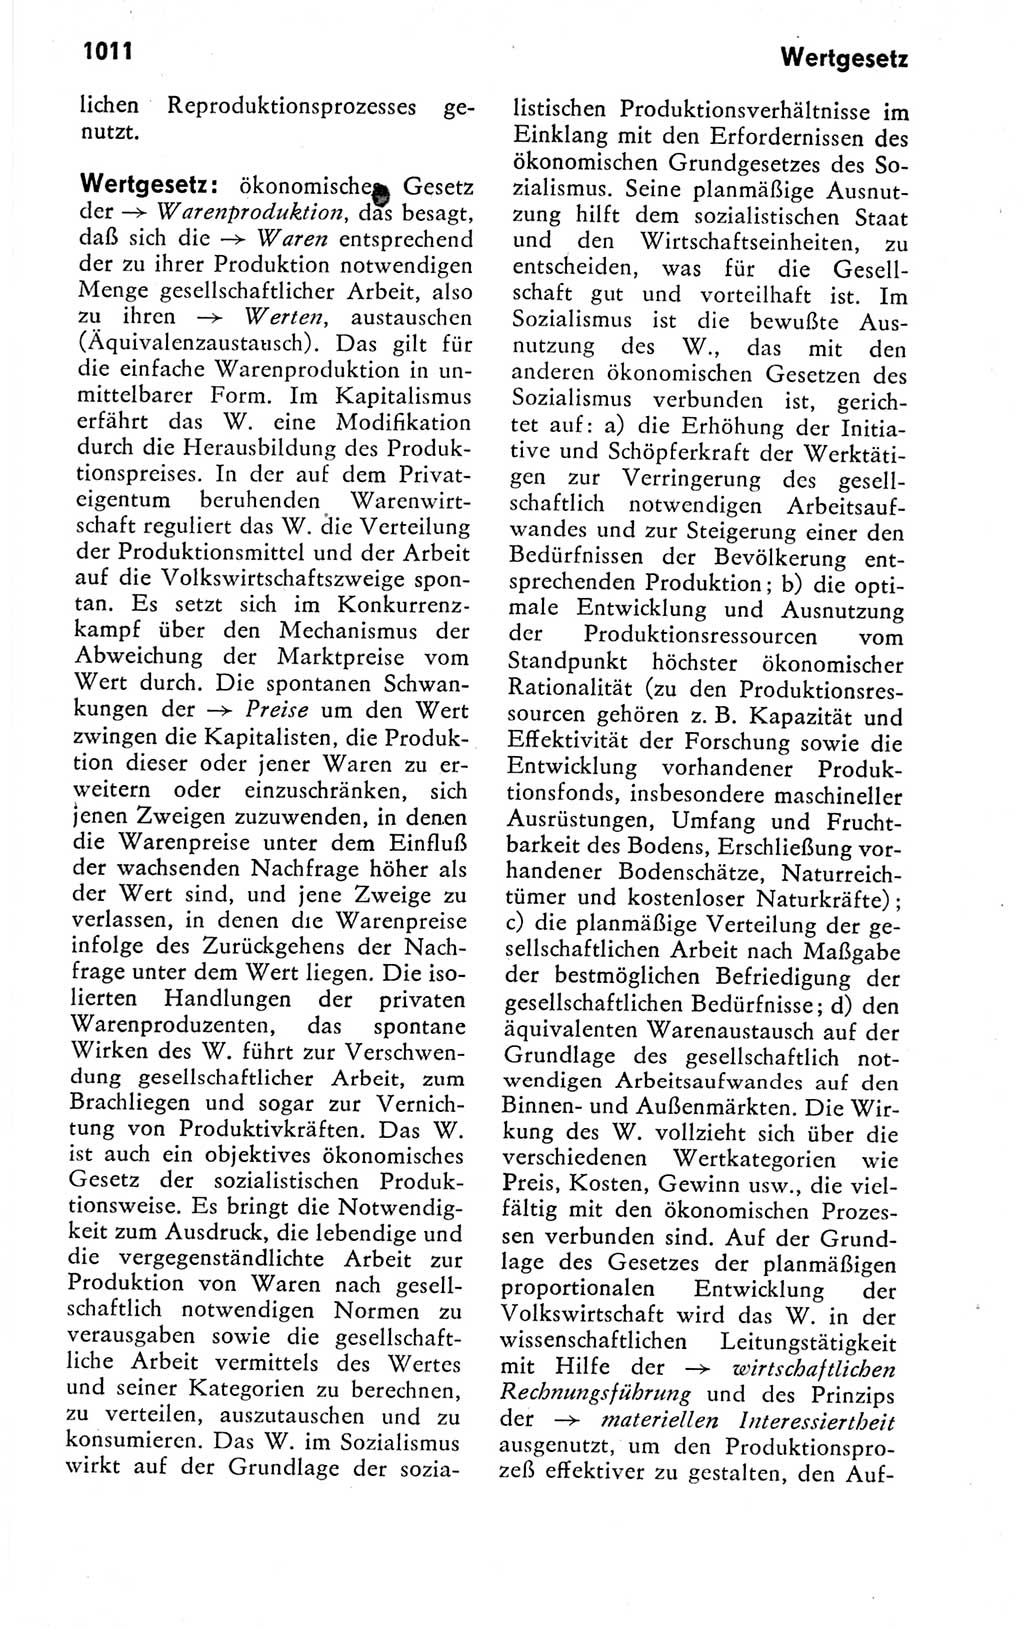 Kleines politisches Wörterbuch [Deutsche Demokratische Republik (DDR)] 1978, Seite 1011 (Kl. pol. Wb. DDR 1978, S. 1011)